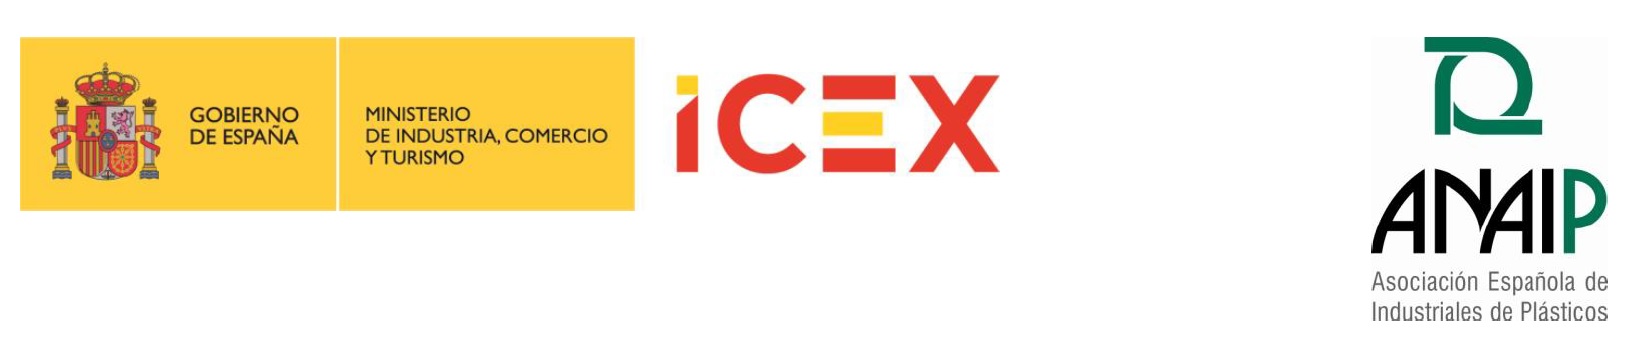 logos convoICEX